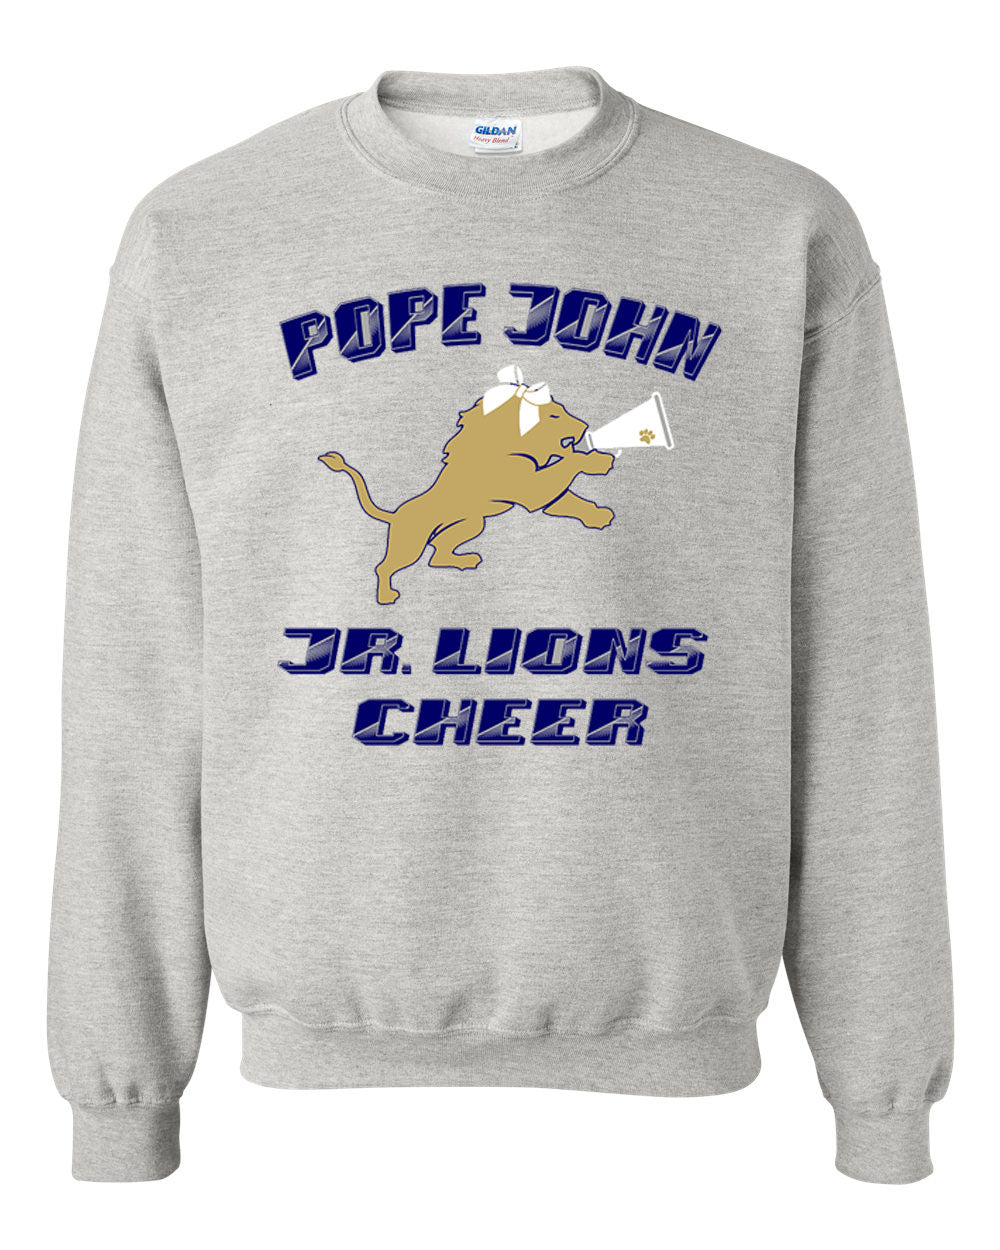 Lions Cheer Design 3 non hooded sweatshirt